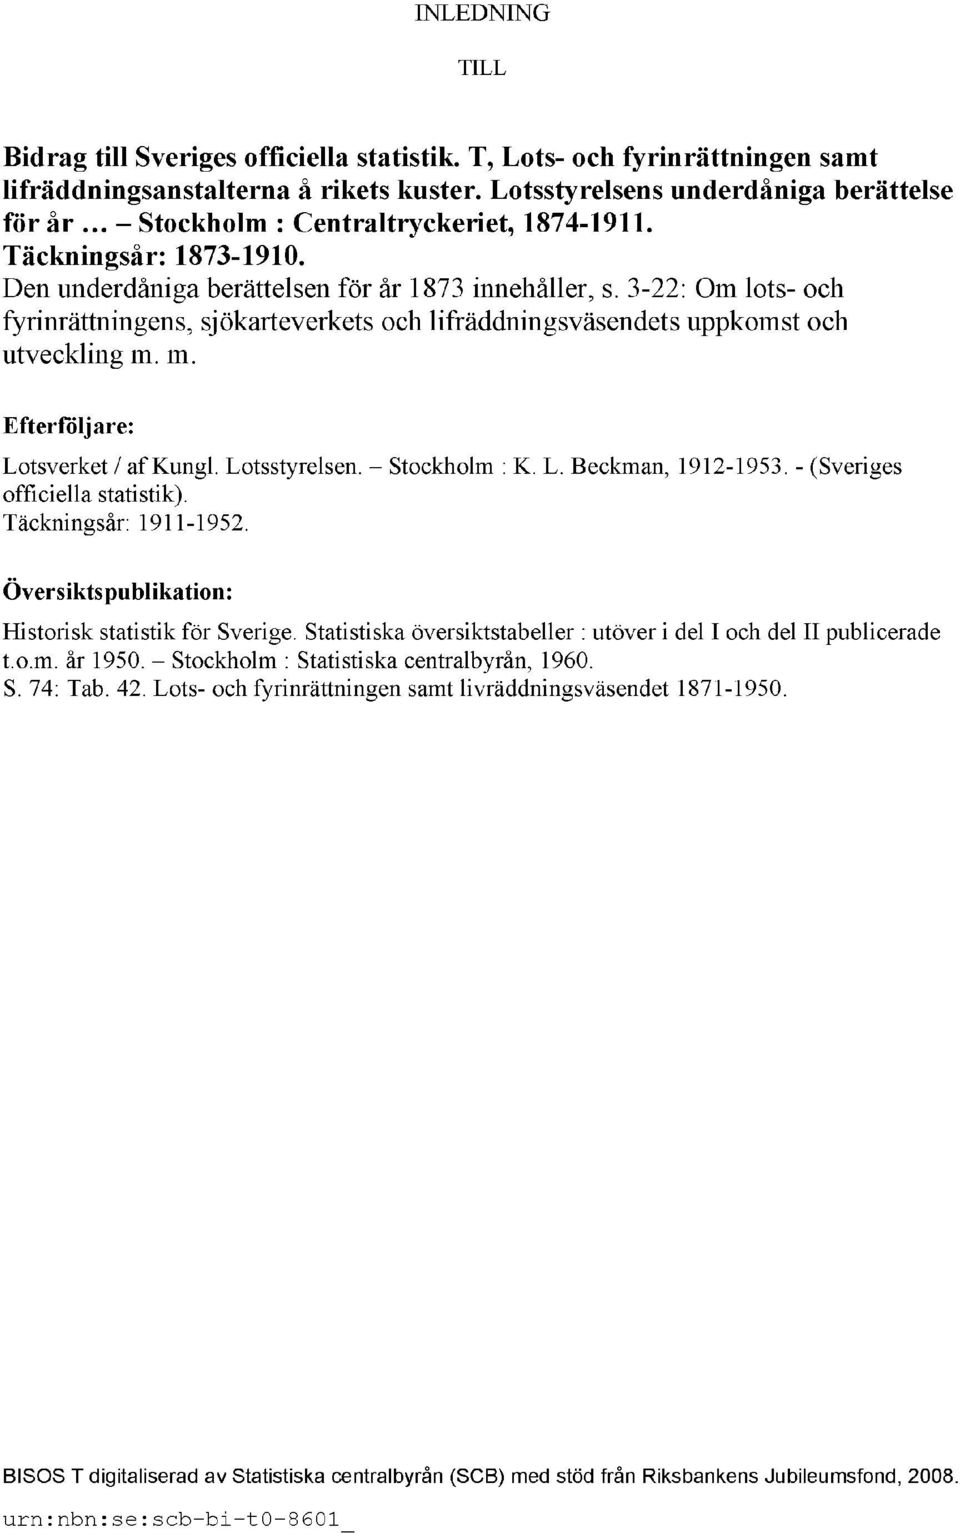 3-22: Om lots- och fyrinrättningens, sjökarteverkets och lifräddningsväsendets uppkomst och utveckling m. m. Efterföljare: Lotsverket / af Kungl. Lotsstyrelsen. Stockholm : K. L. Beckman, 1912-1953.